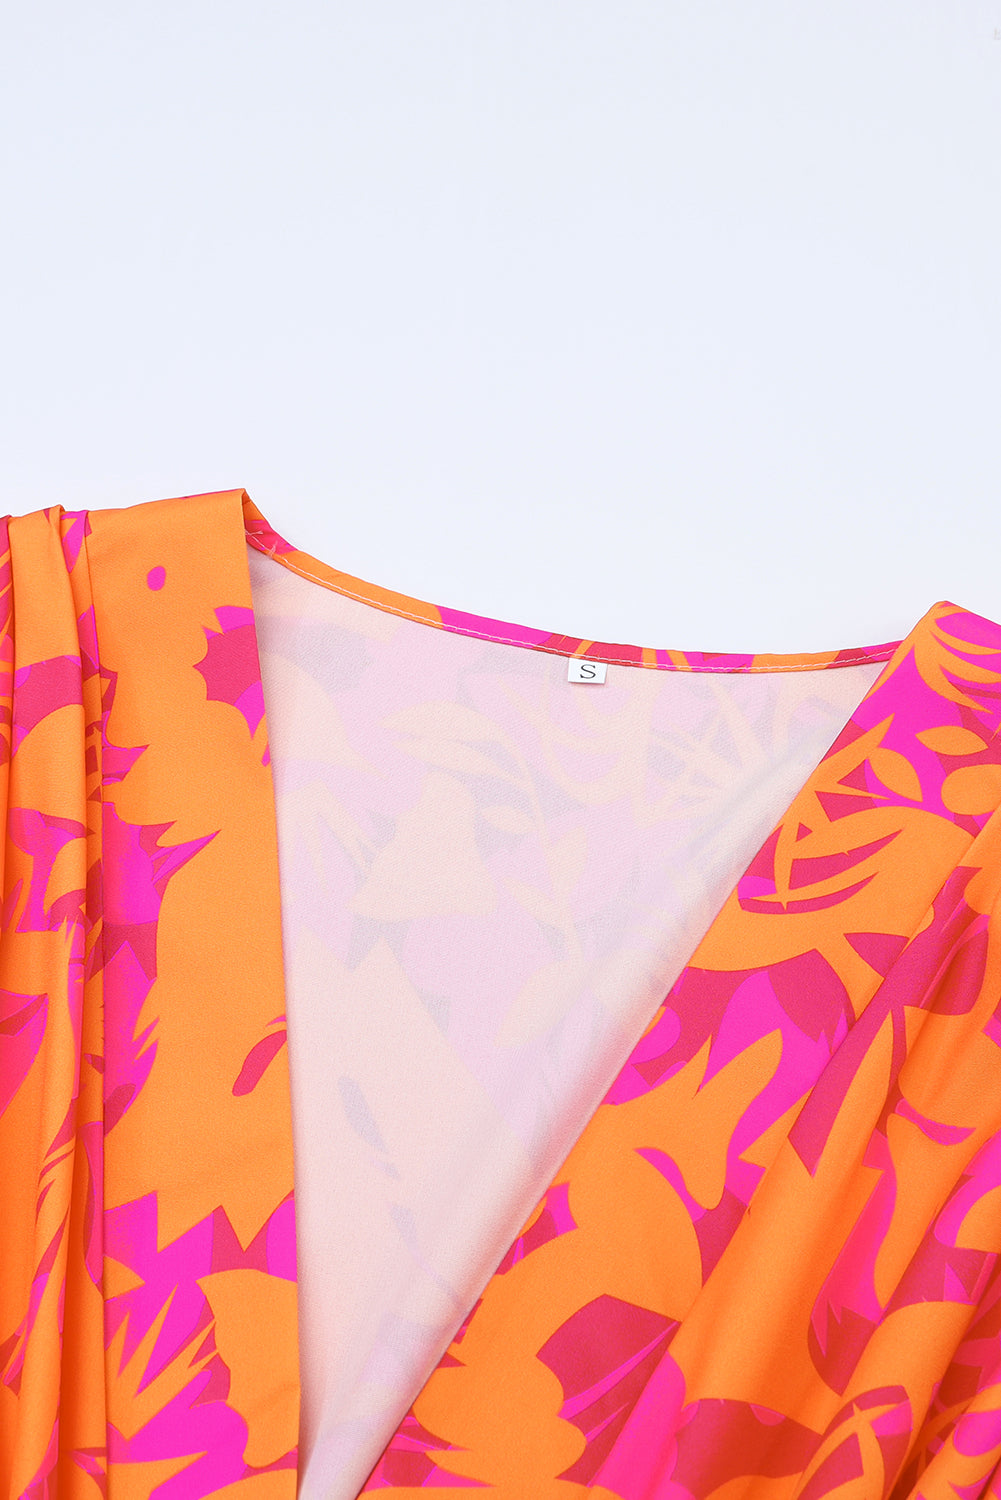 Mini obleka z večbarvnimi cvetličnimi potiski in naborki, z rokavi v obliki netopirjevega izreza